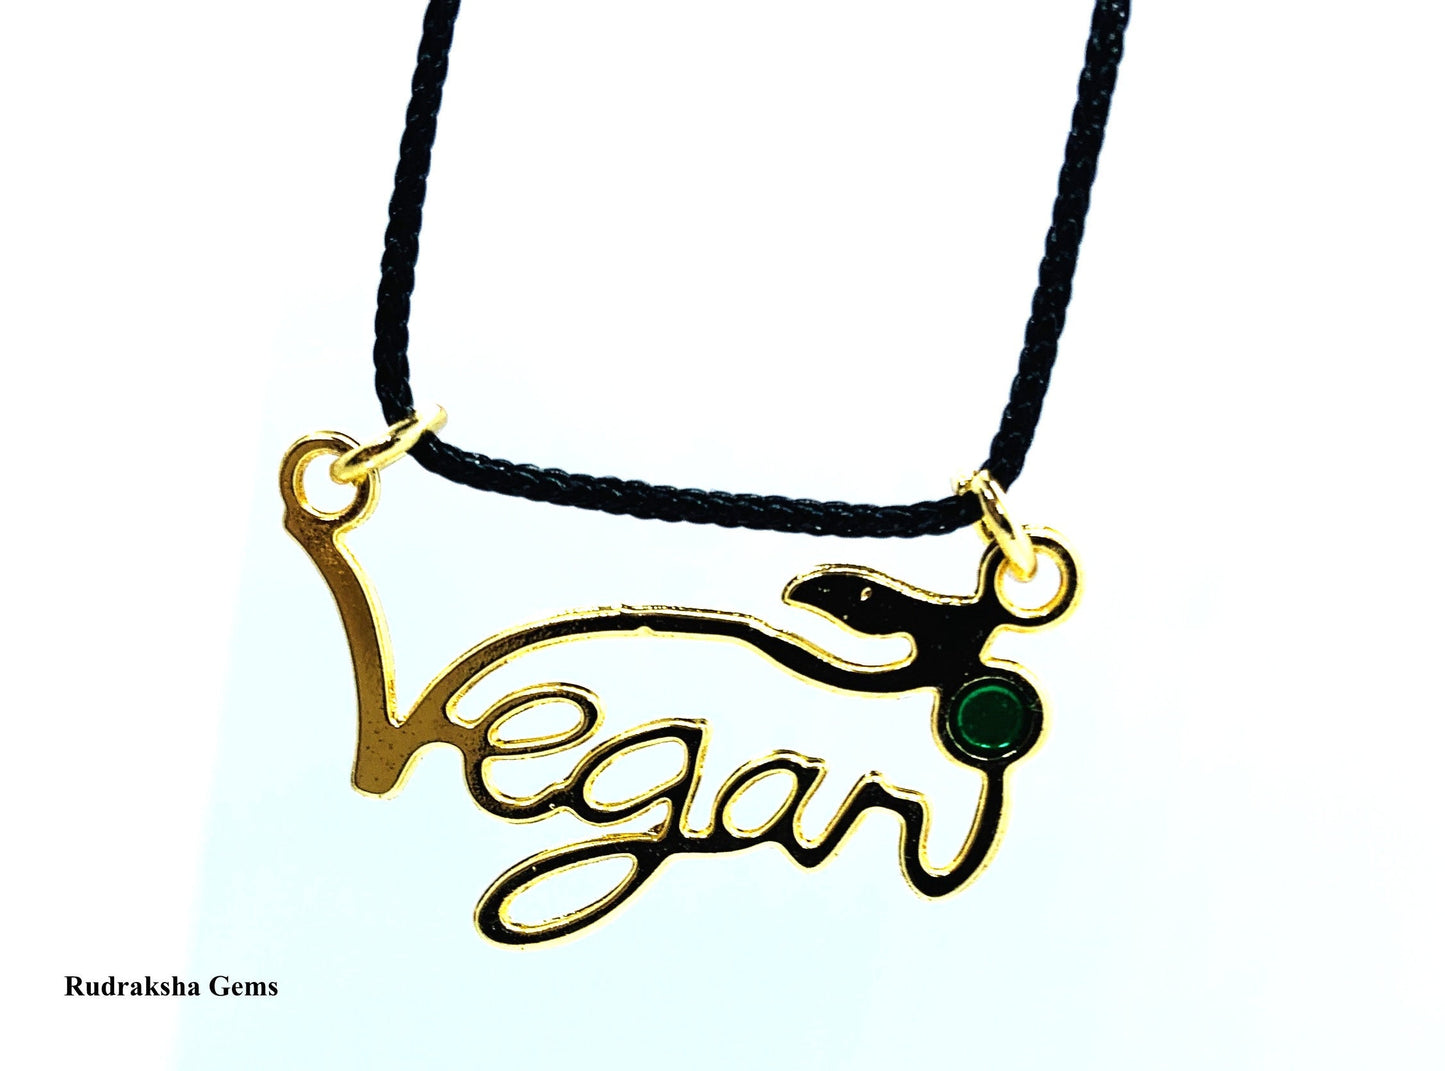 V for vegan necklace - vegan jewellery - subtle vegan message - uk vegan - with leaf- Brass pendant, Golden Silver tone Vegan Necklace